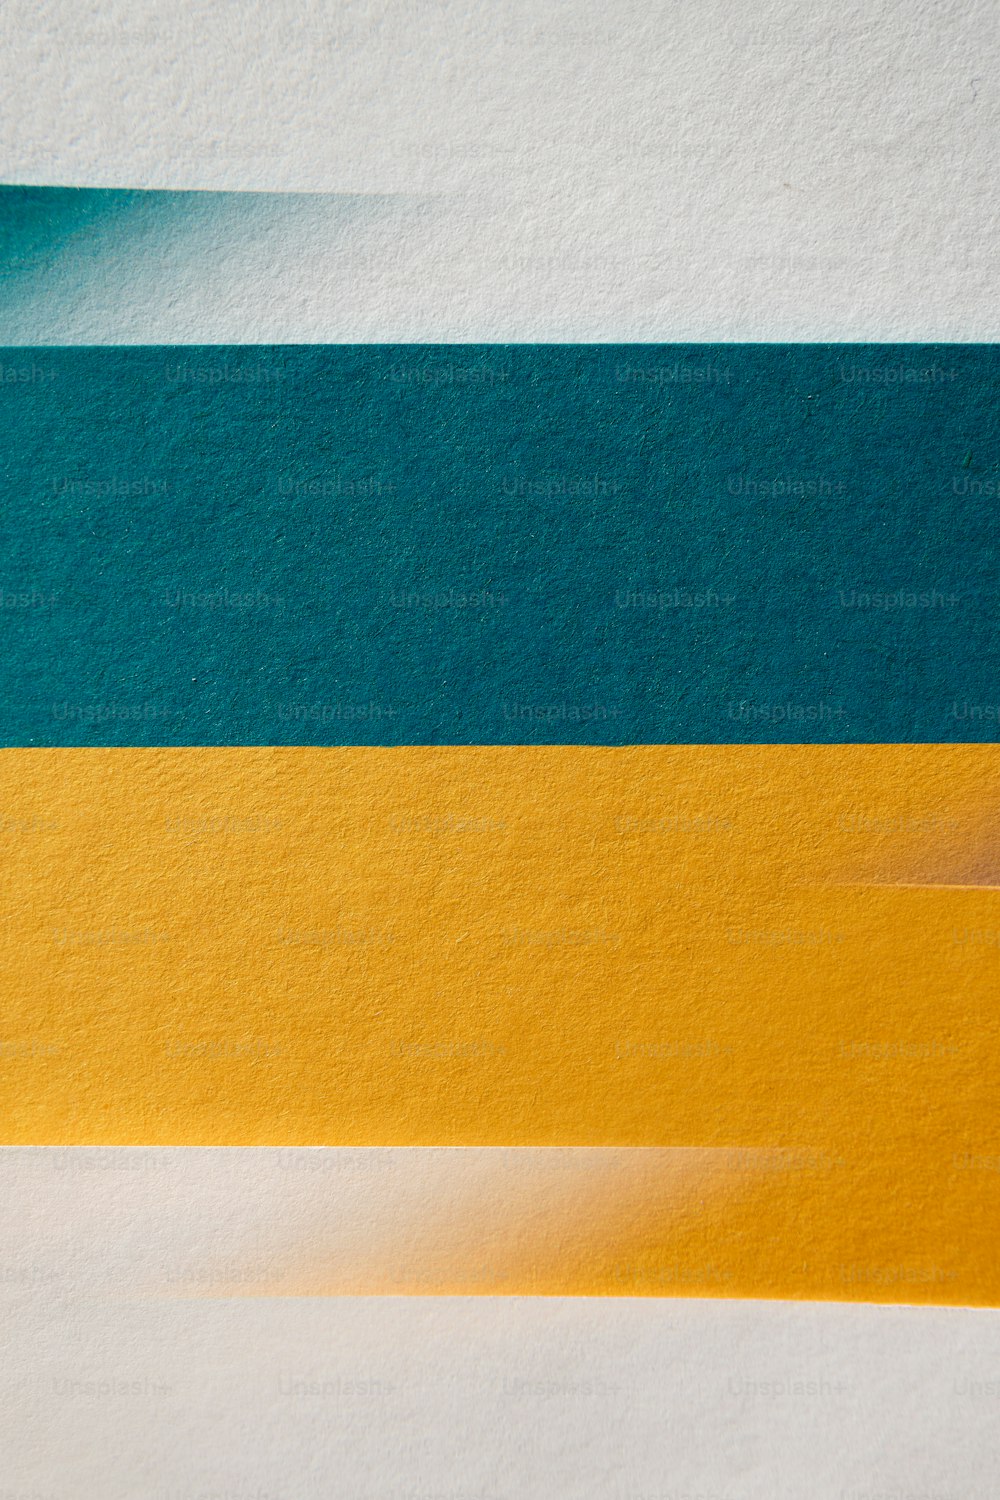 um close up de um pedaço de papel com tiras amarelas e azuis